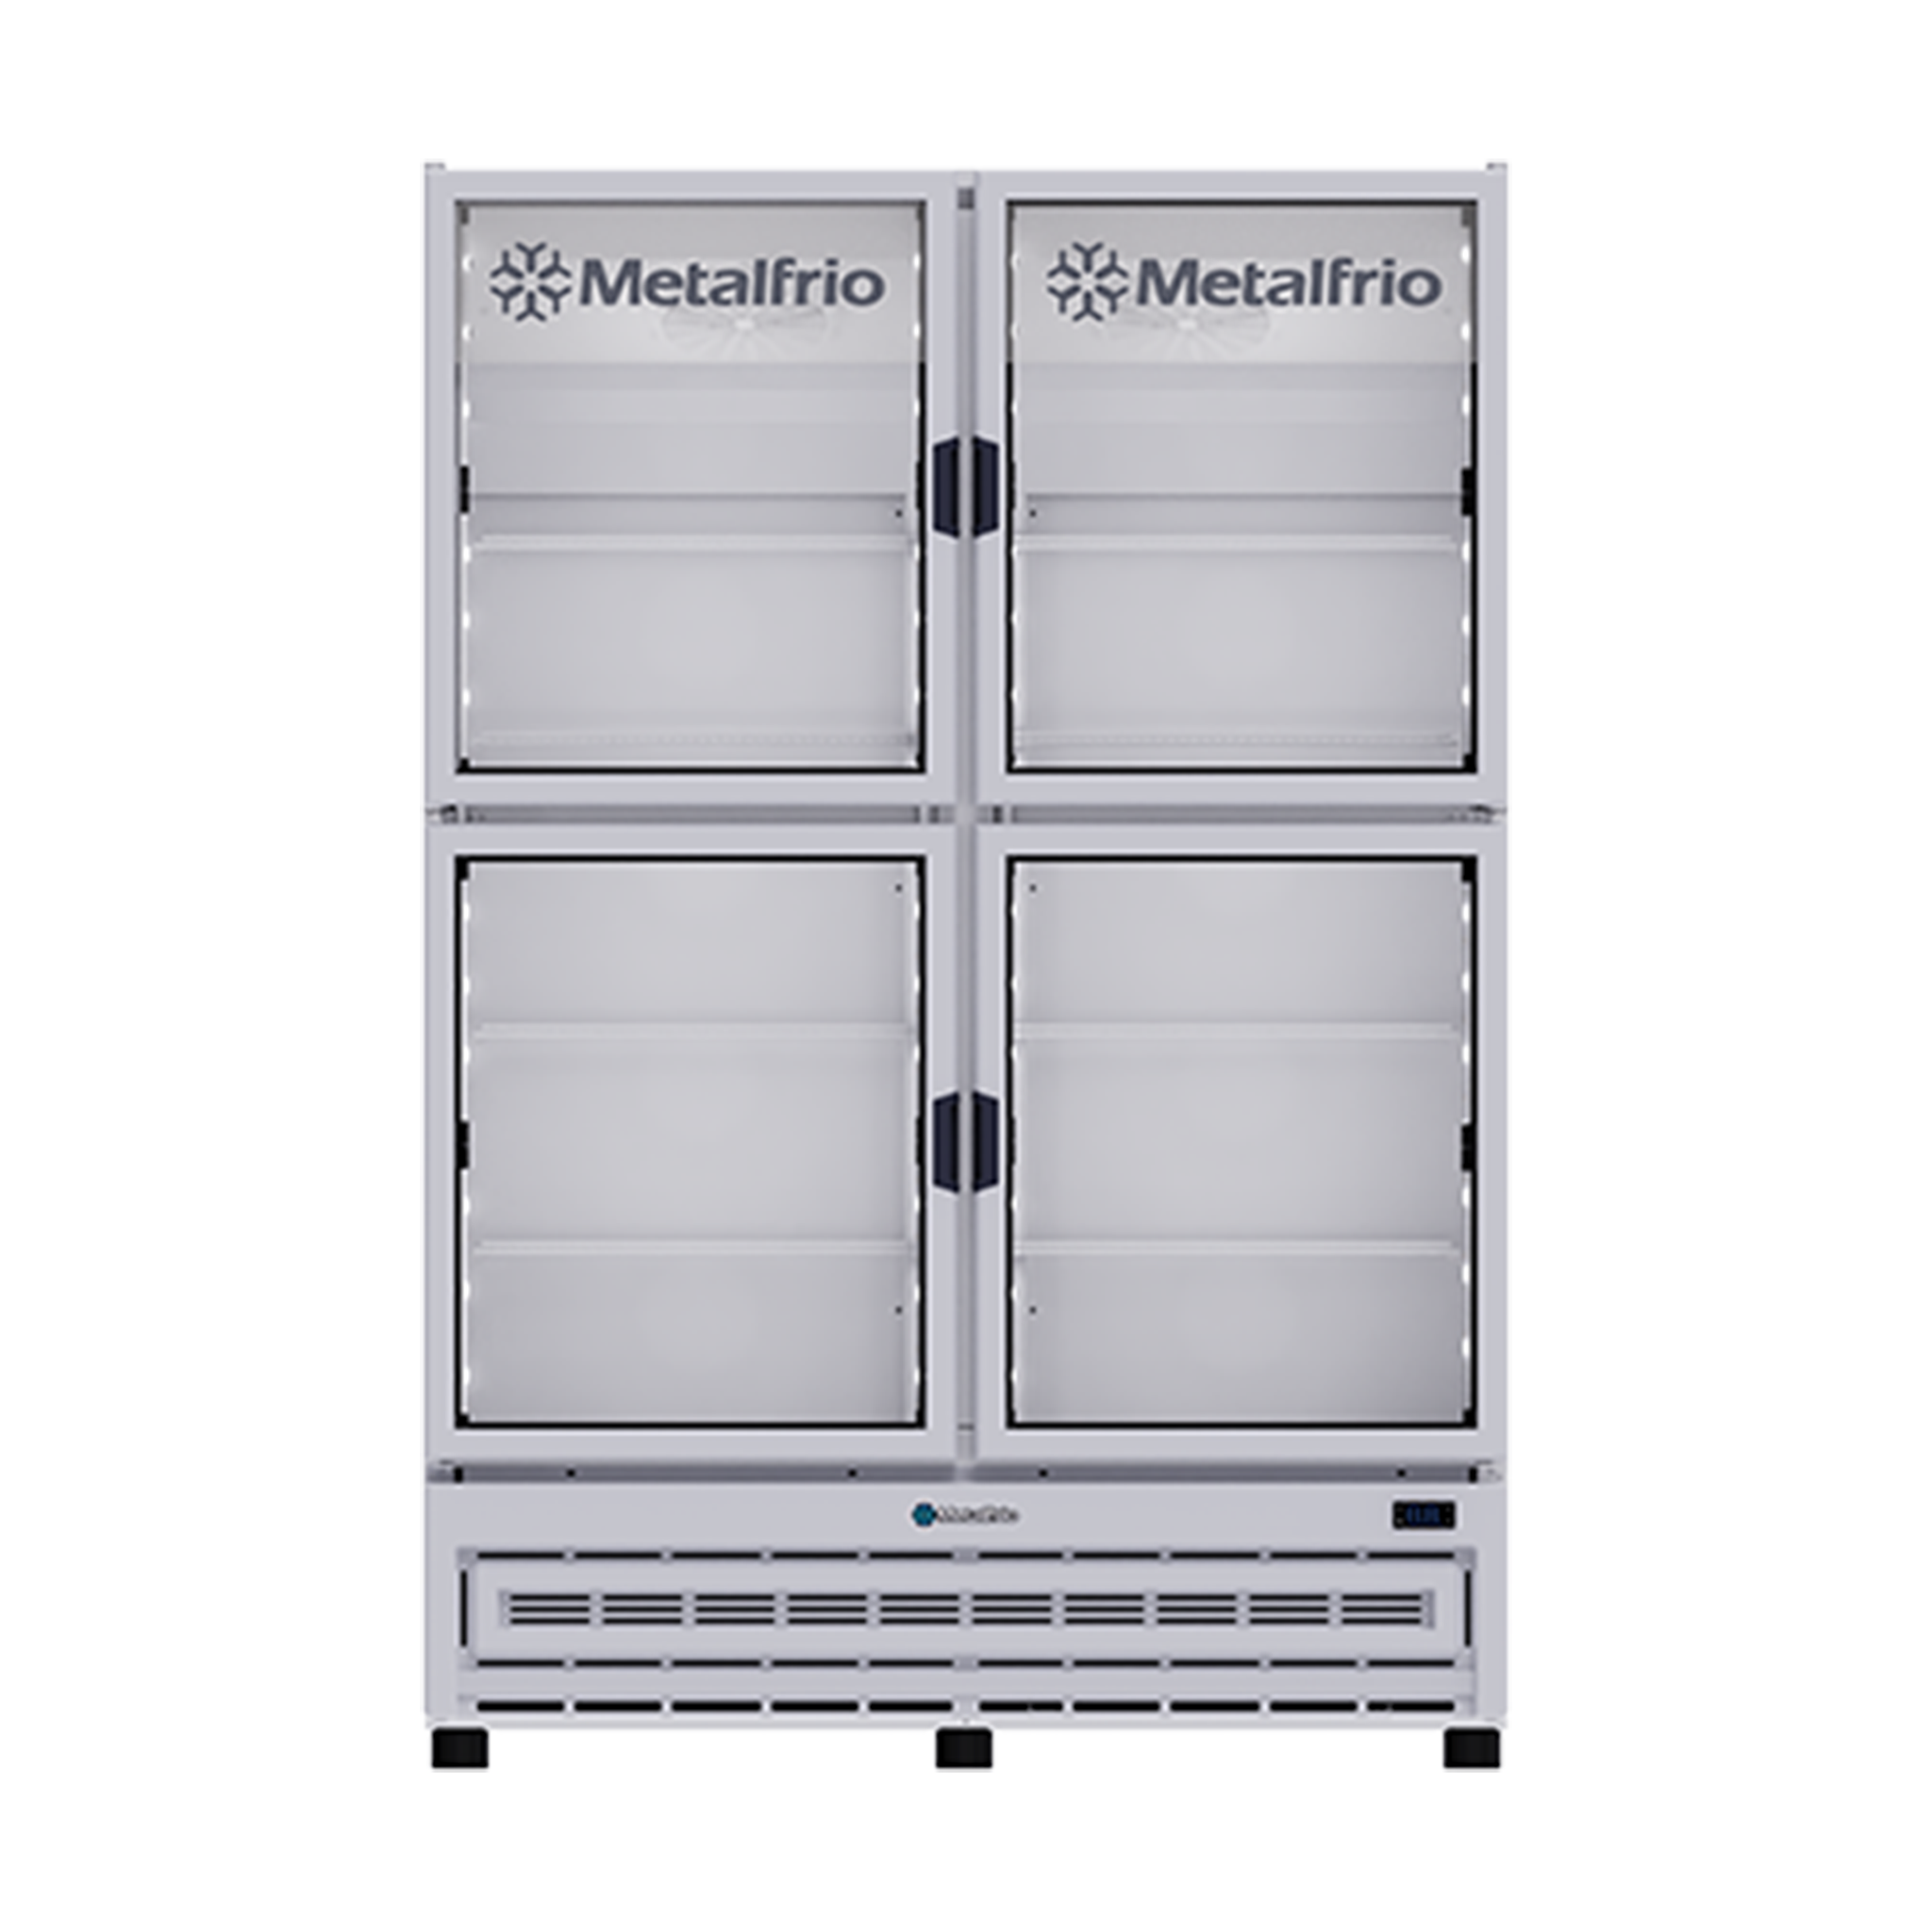 METALFRIO RB804 Refrigerador Vertical 1,196 lts.